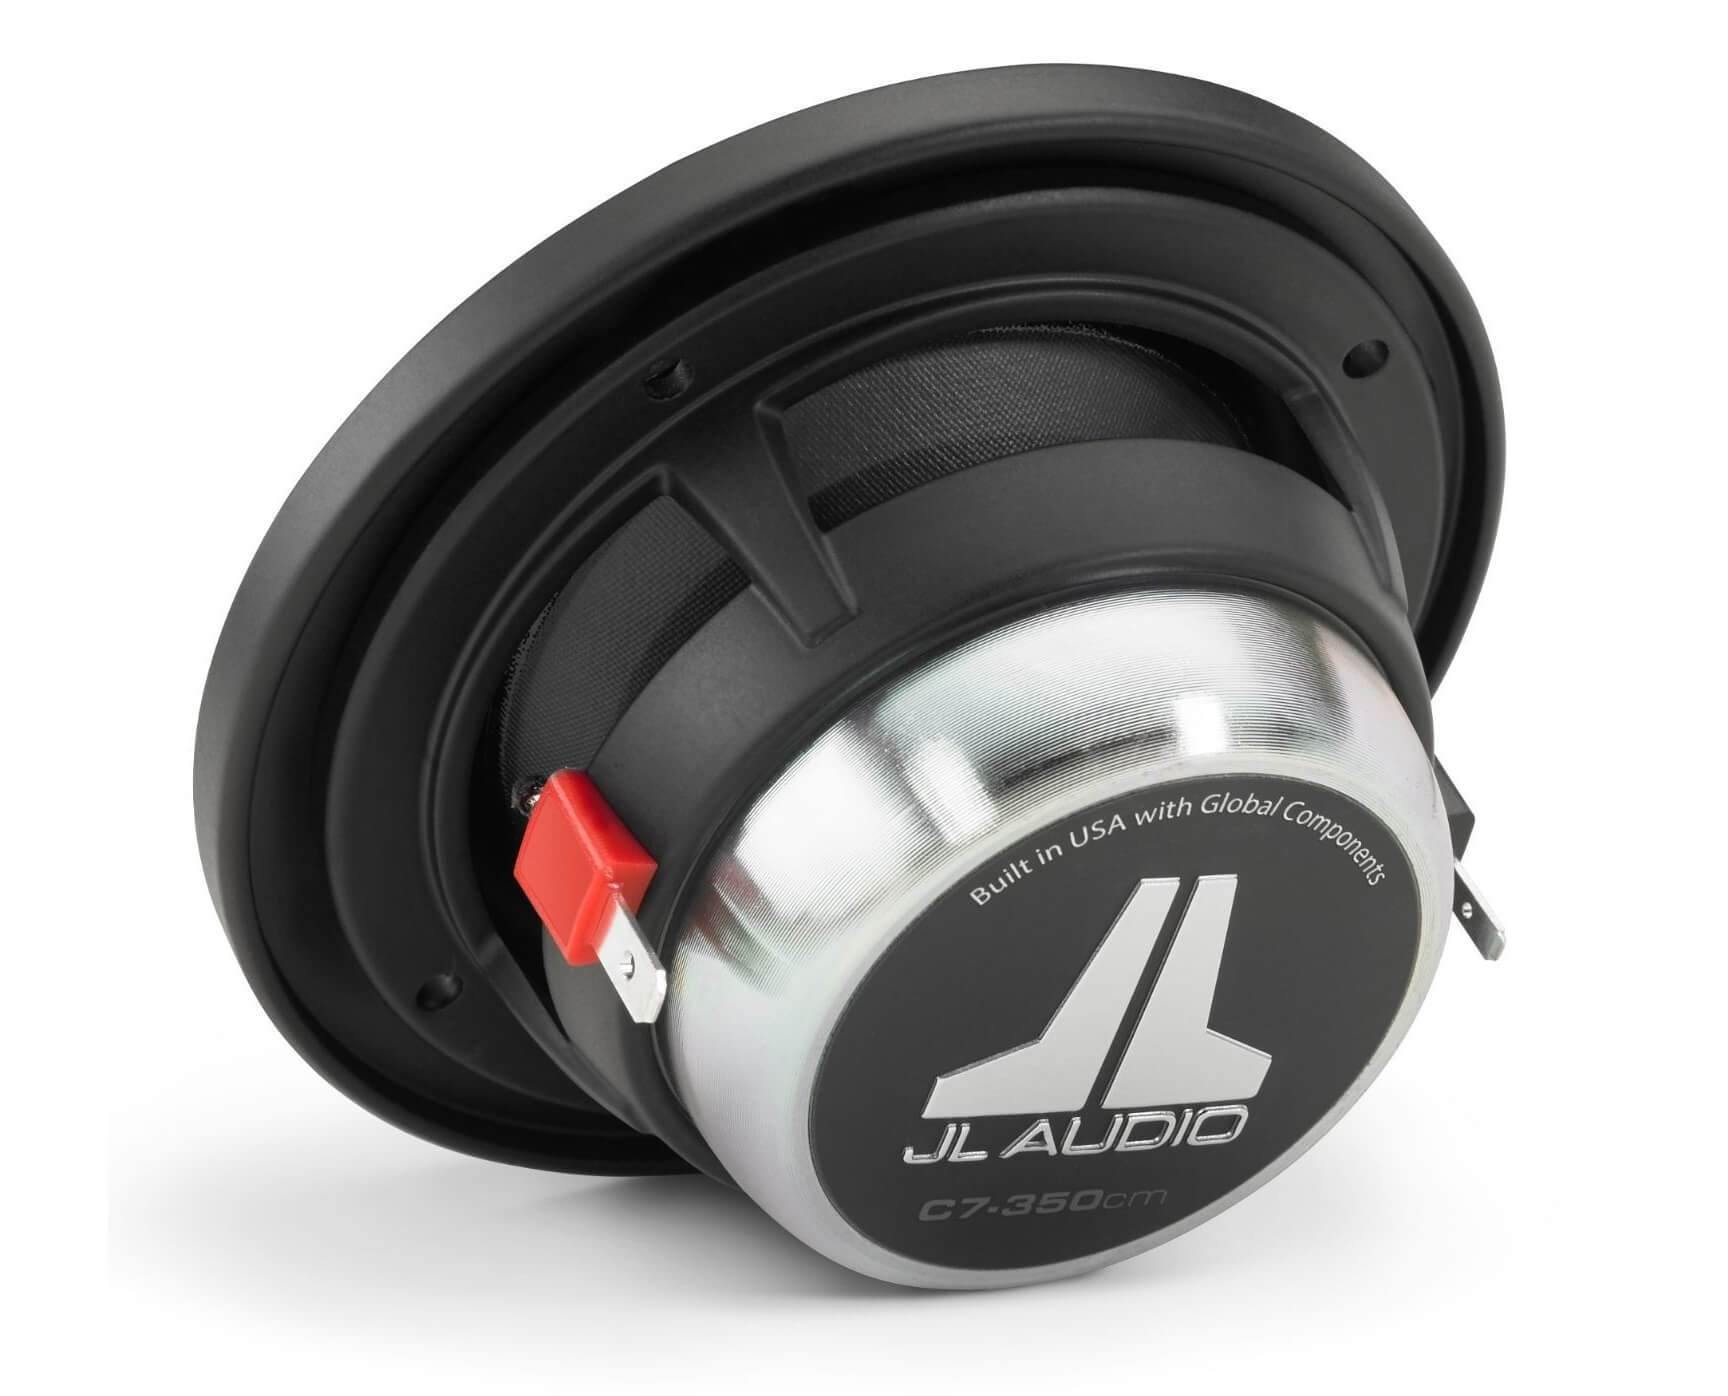 JL Audio C7-350cm - 3.5 Inch Component Midrange Speakers - 6